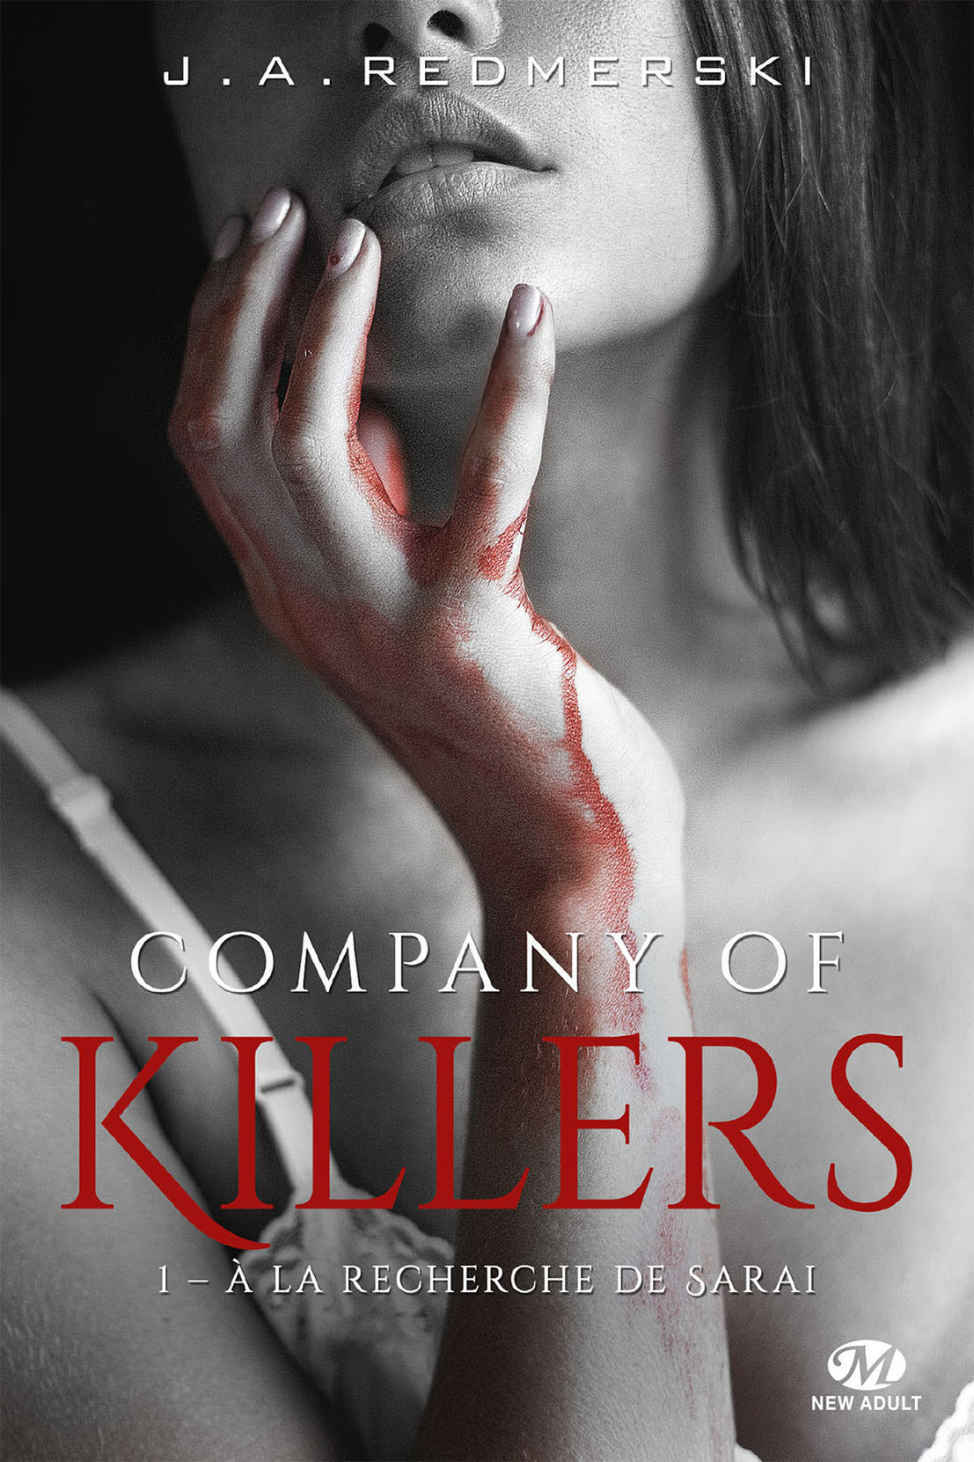 Tag darkromance sur Entre 2 livres Company-of-killers-tome-1-a-la-recherche-de-sarai-1115629